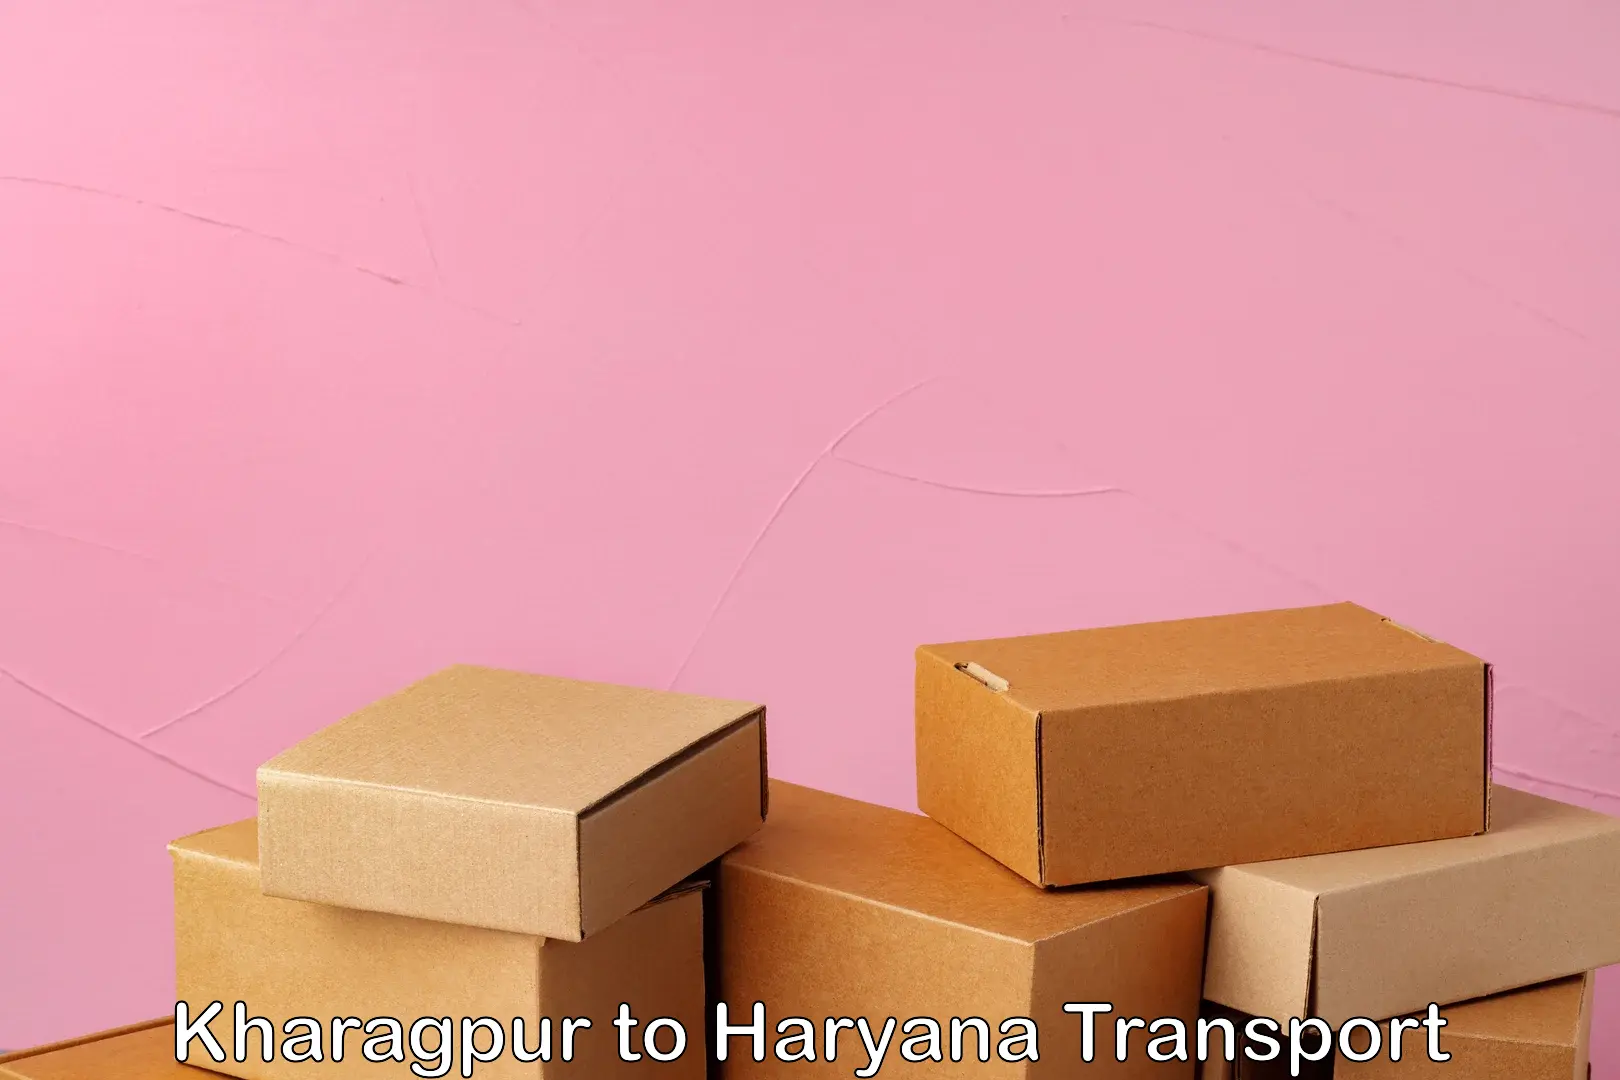 Bike shipping service Kharagpur to Haryana